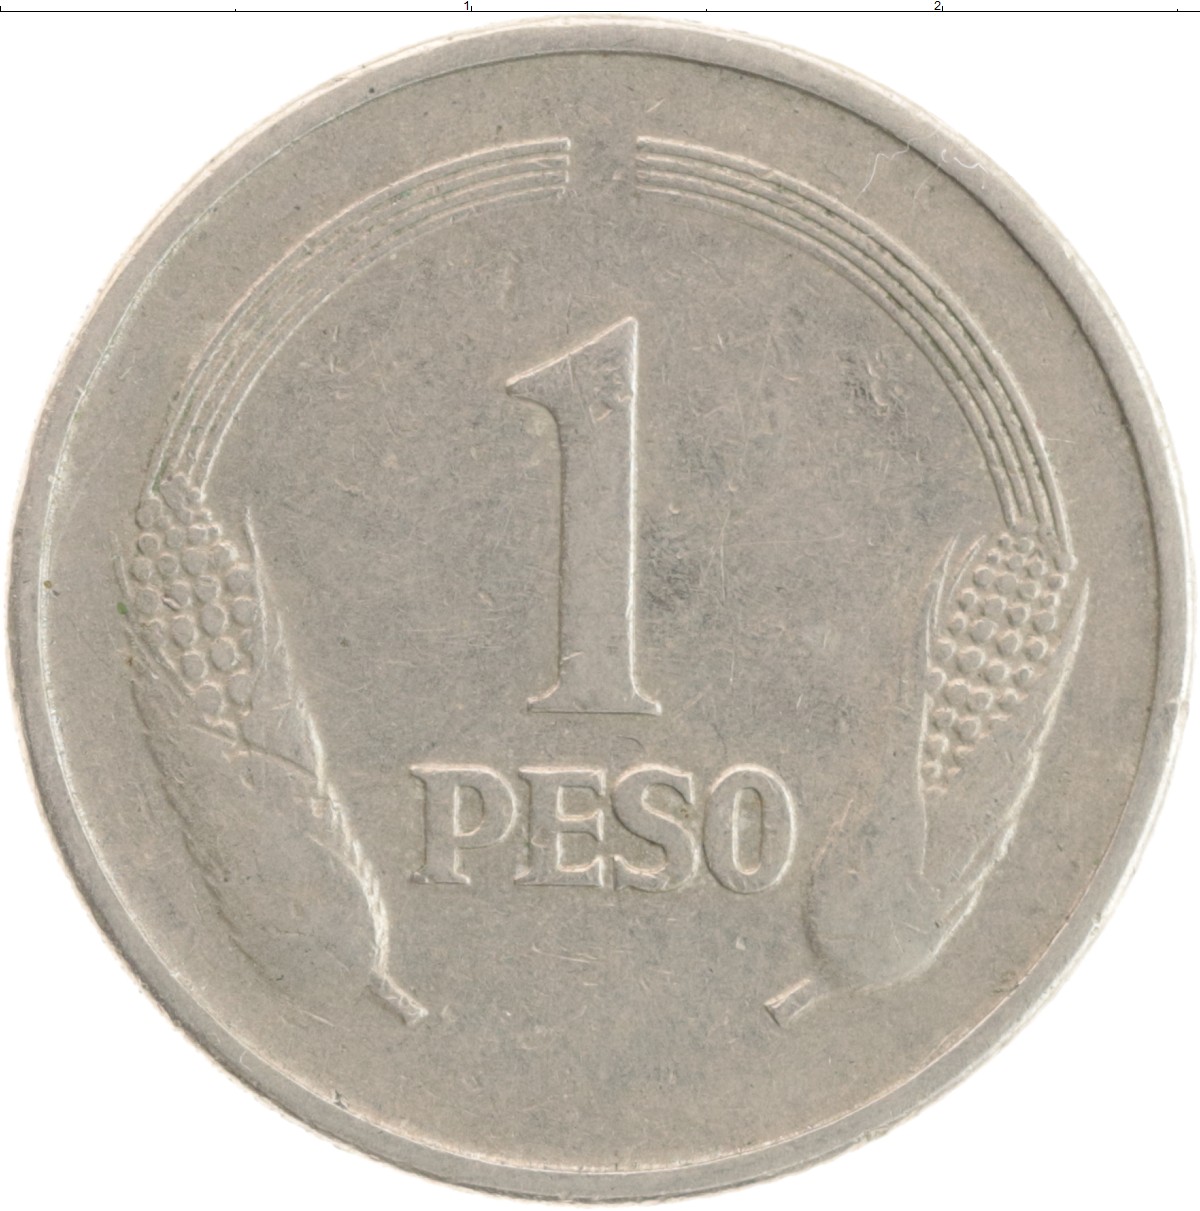 7 рублей в 80. Монеты Колумбии. Колумбийское песо монеты. Песо монета Колумбии. Монета 1 1977.